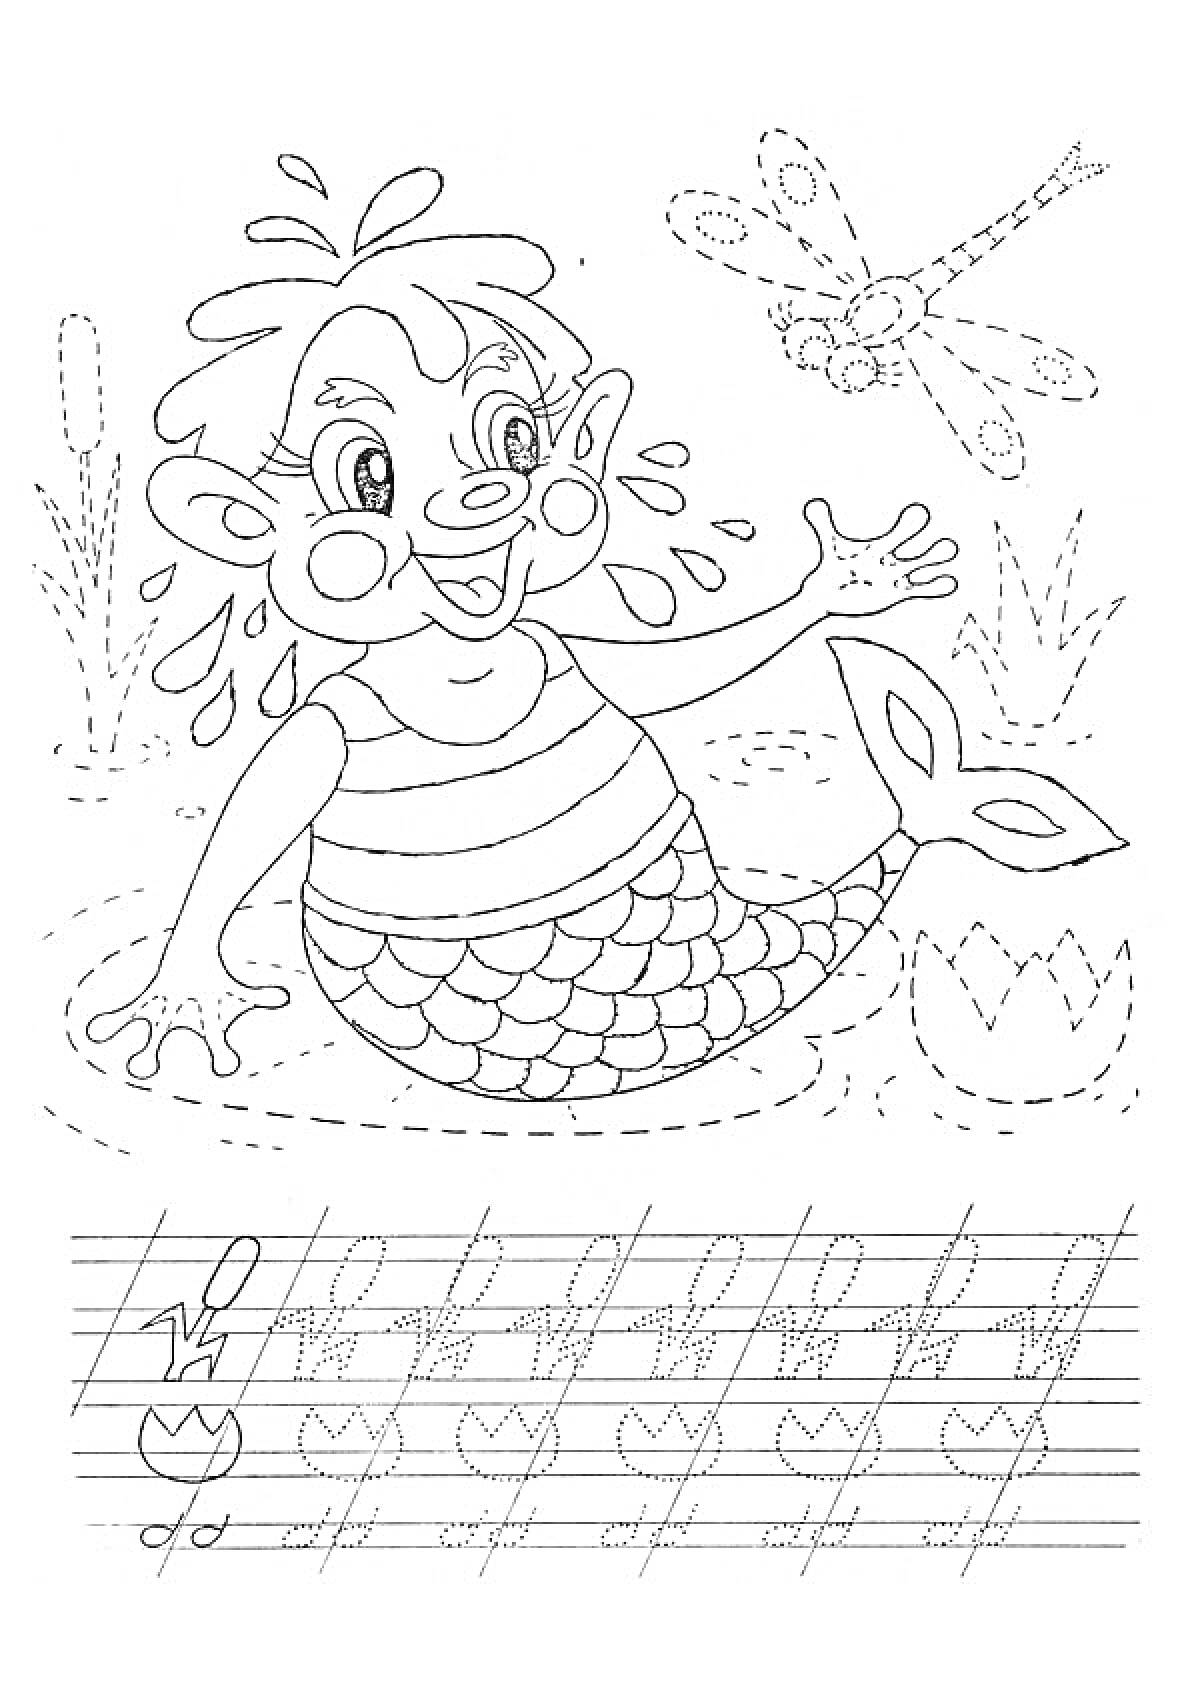 Раскраска Водяной со счастливым выражением лица, махающий рукой, с рыбьим хвостом, окруженный водой, растениями и стрекозой, с прописными линиями для письма на нижней части страницы